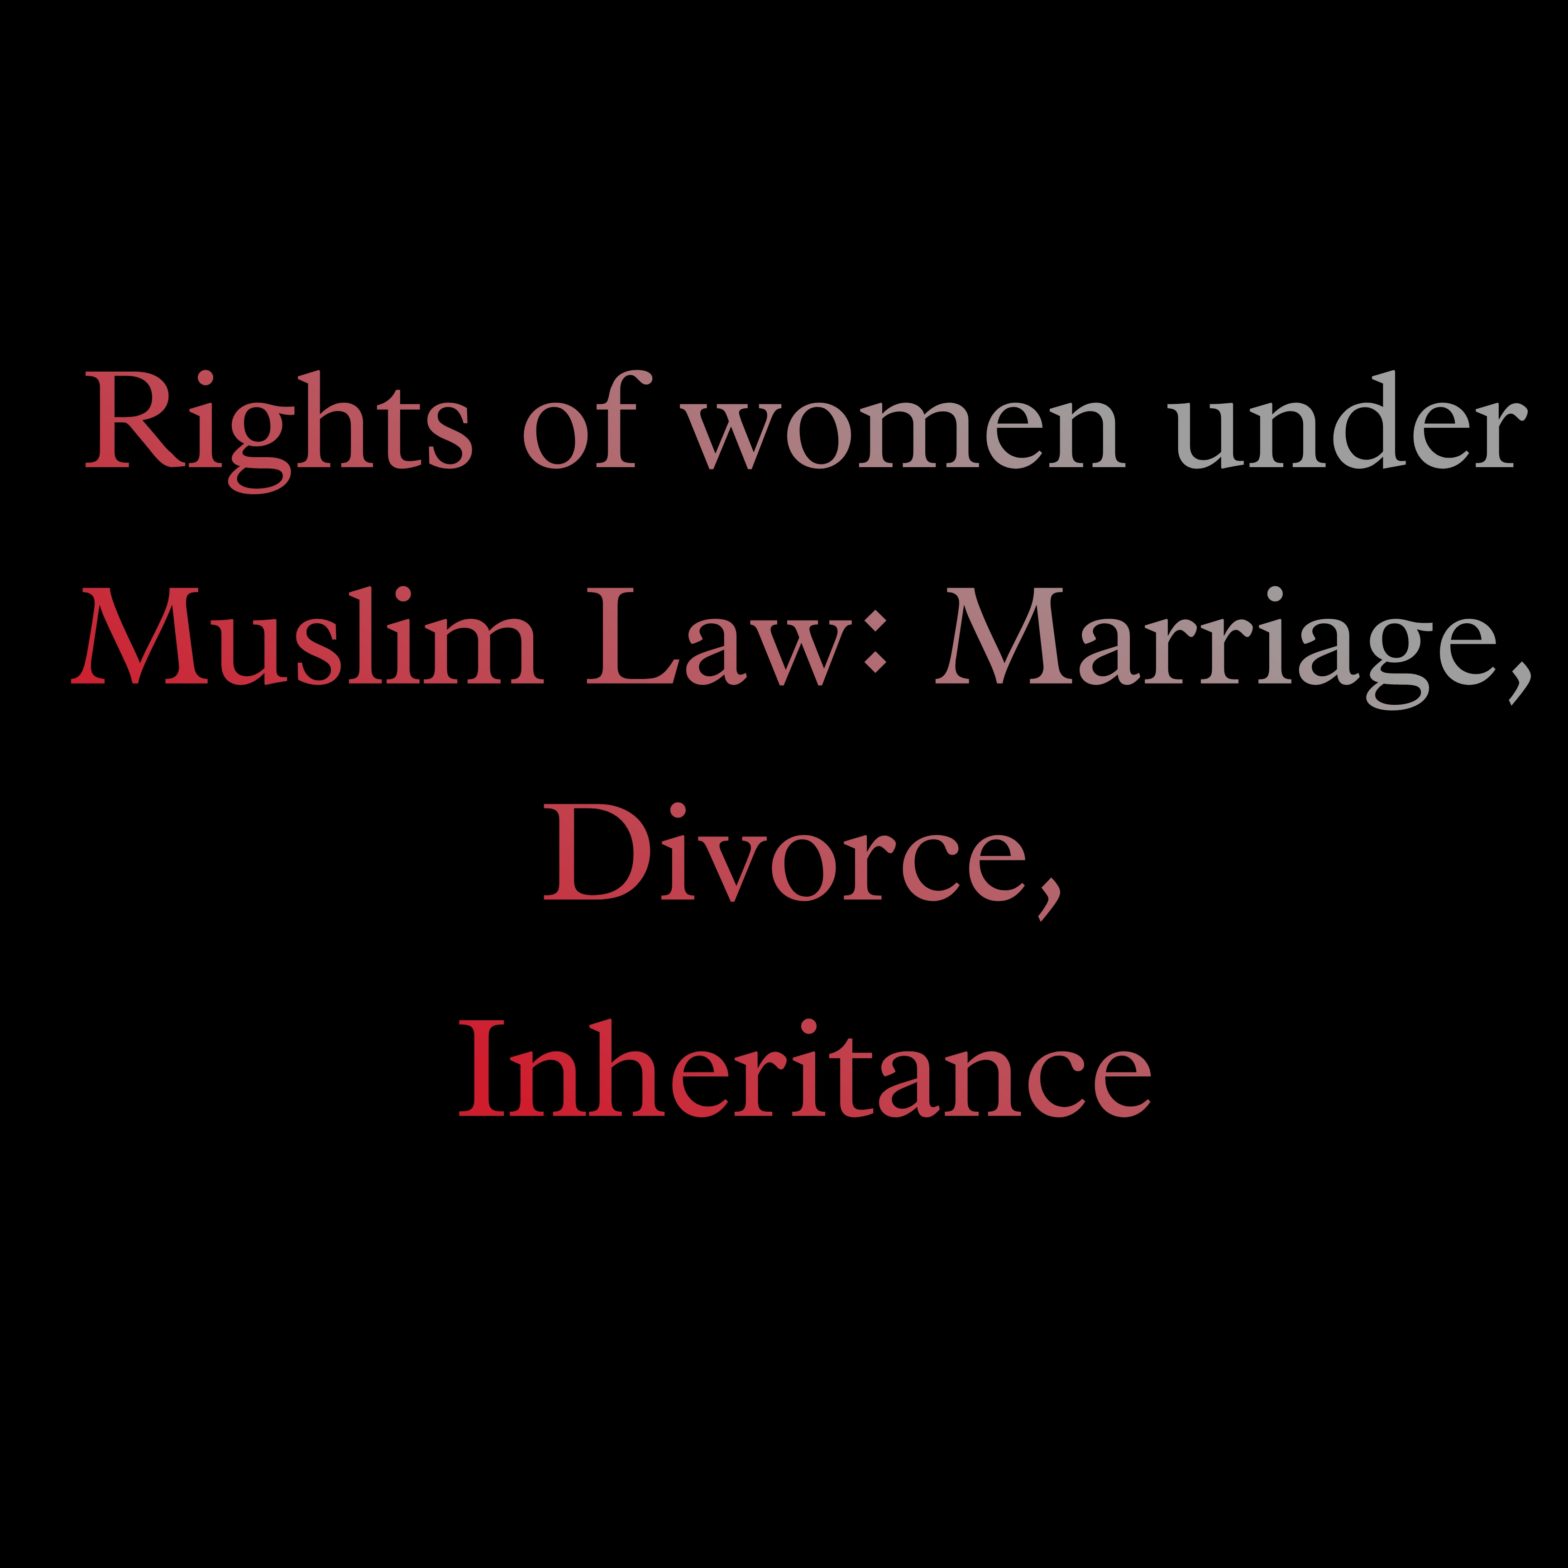 Rights of women under Muslim Law: Marriage, Divorce, Inheritance